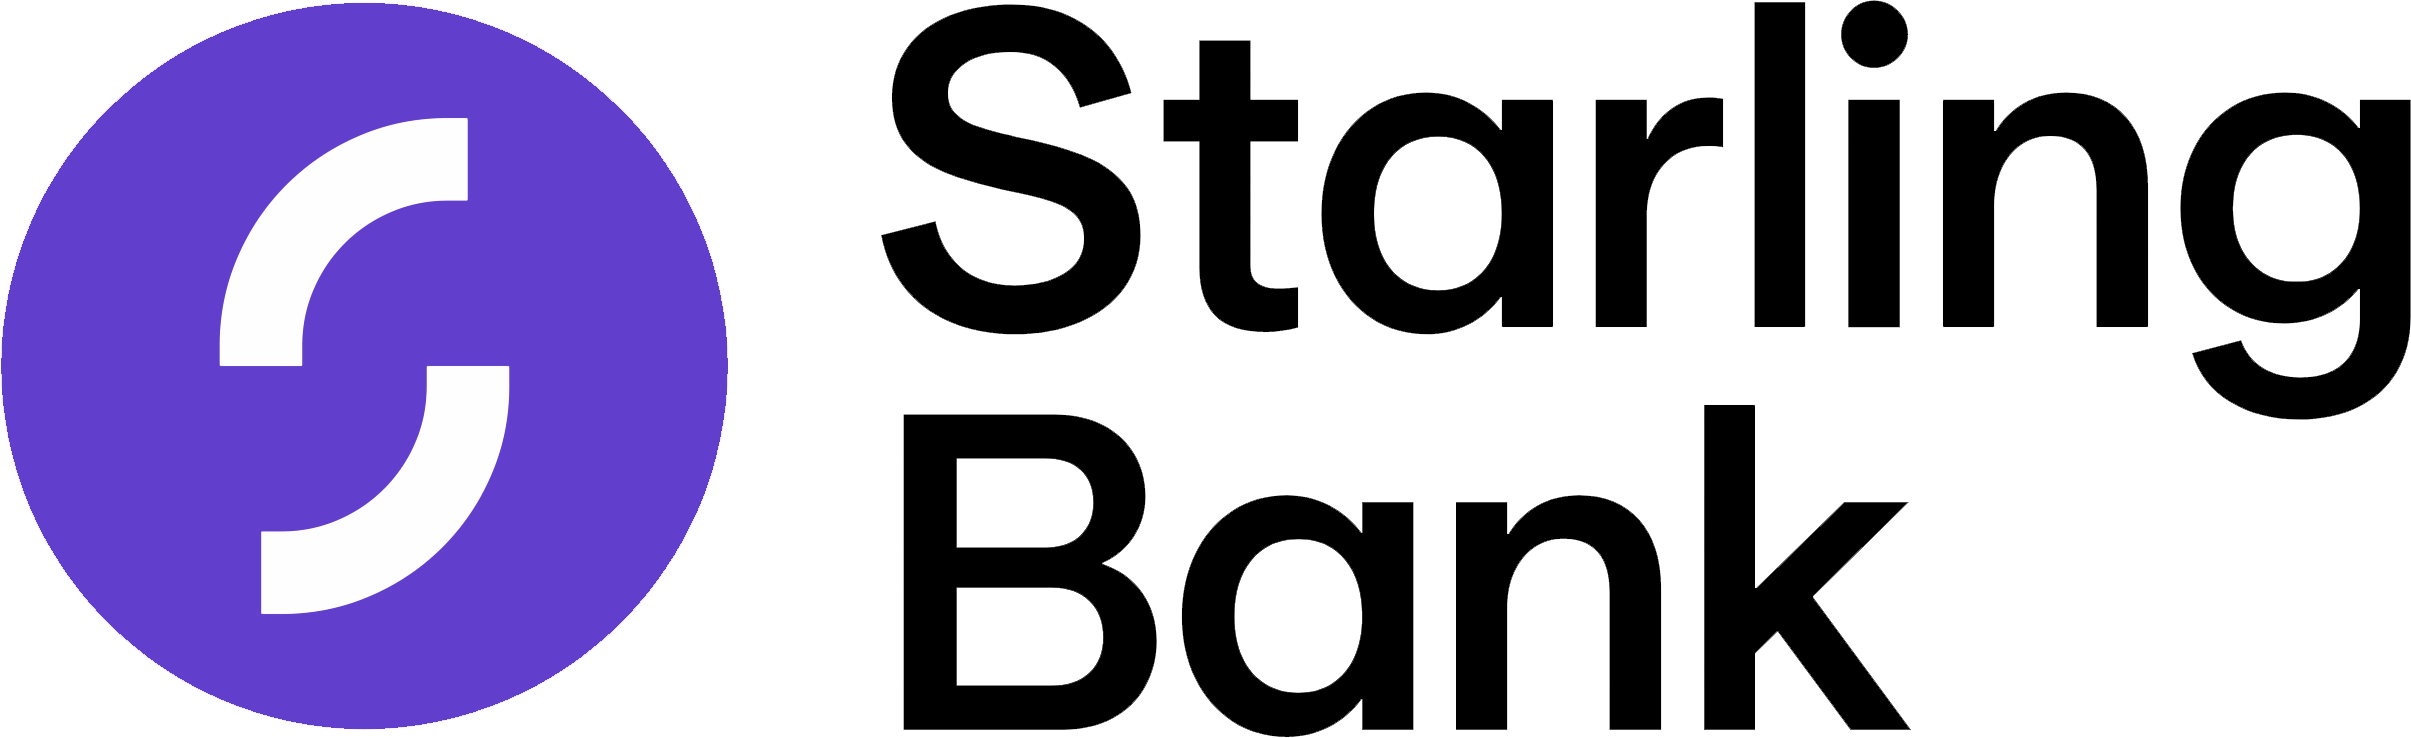 starling bank logo